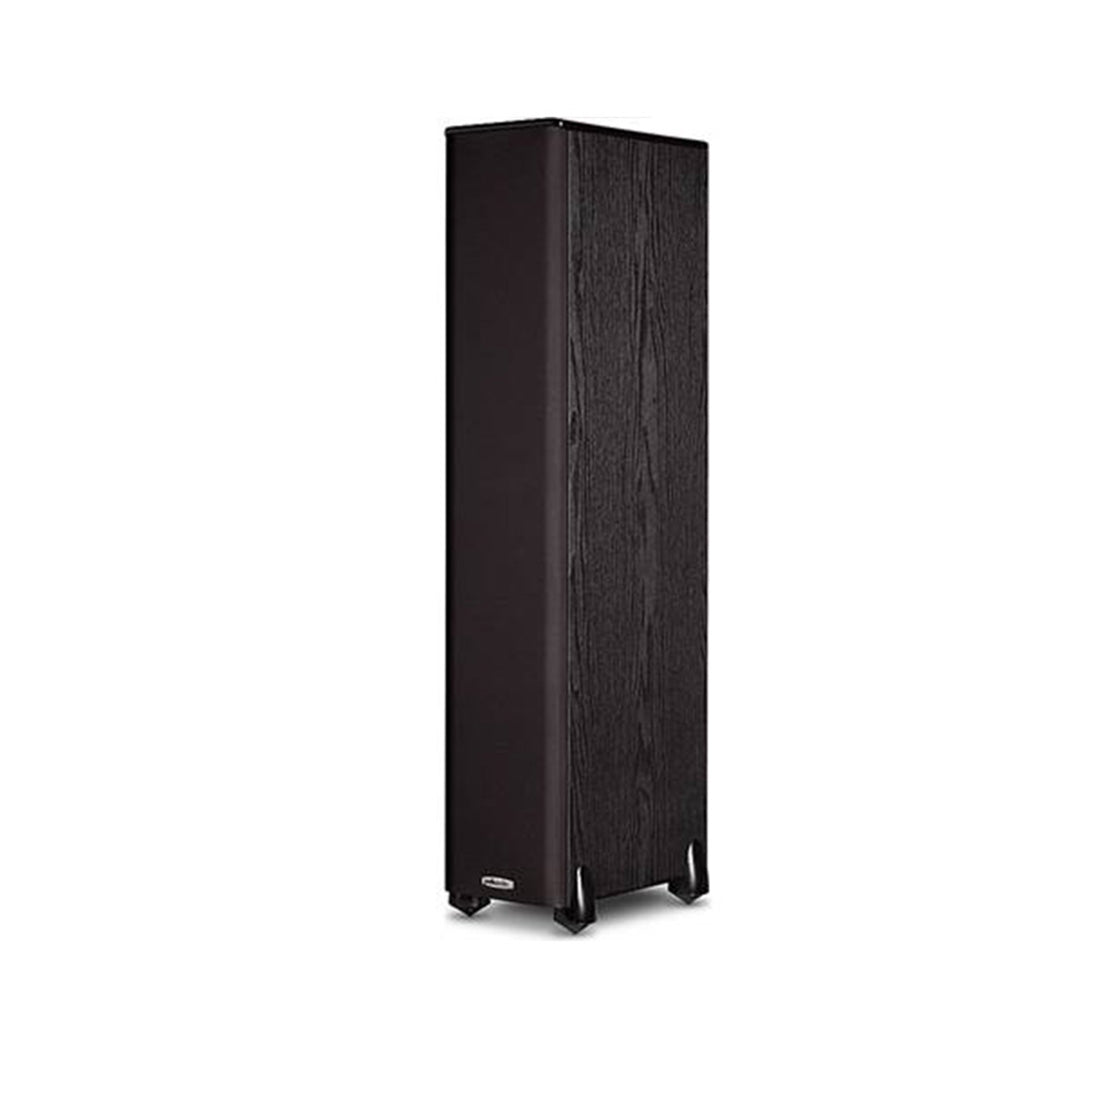 Polk TSi Series 3-Way Floor Standing Tower Speaker